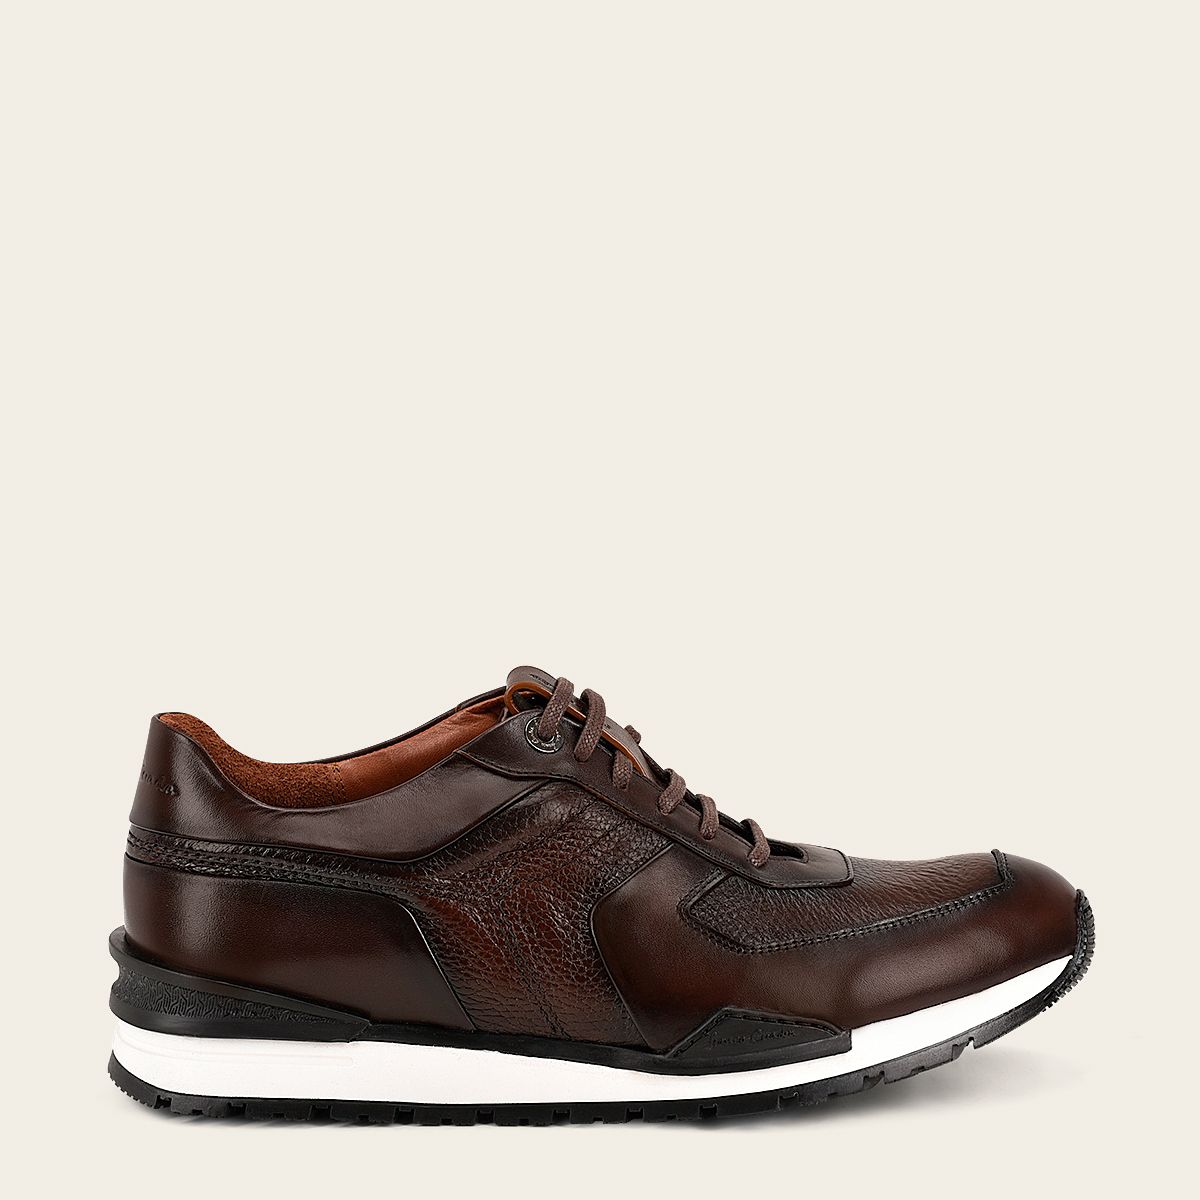 Brown deer leather sneaker